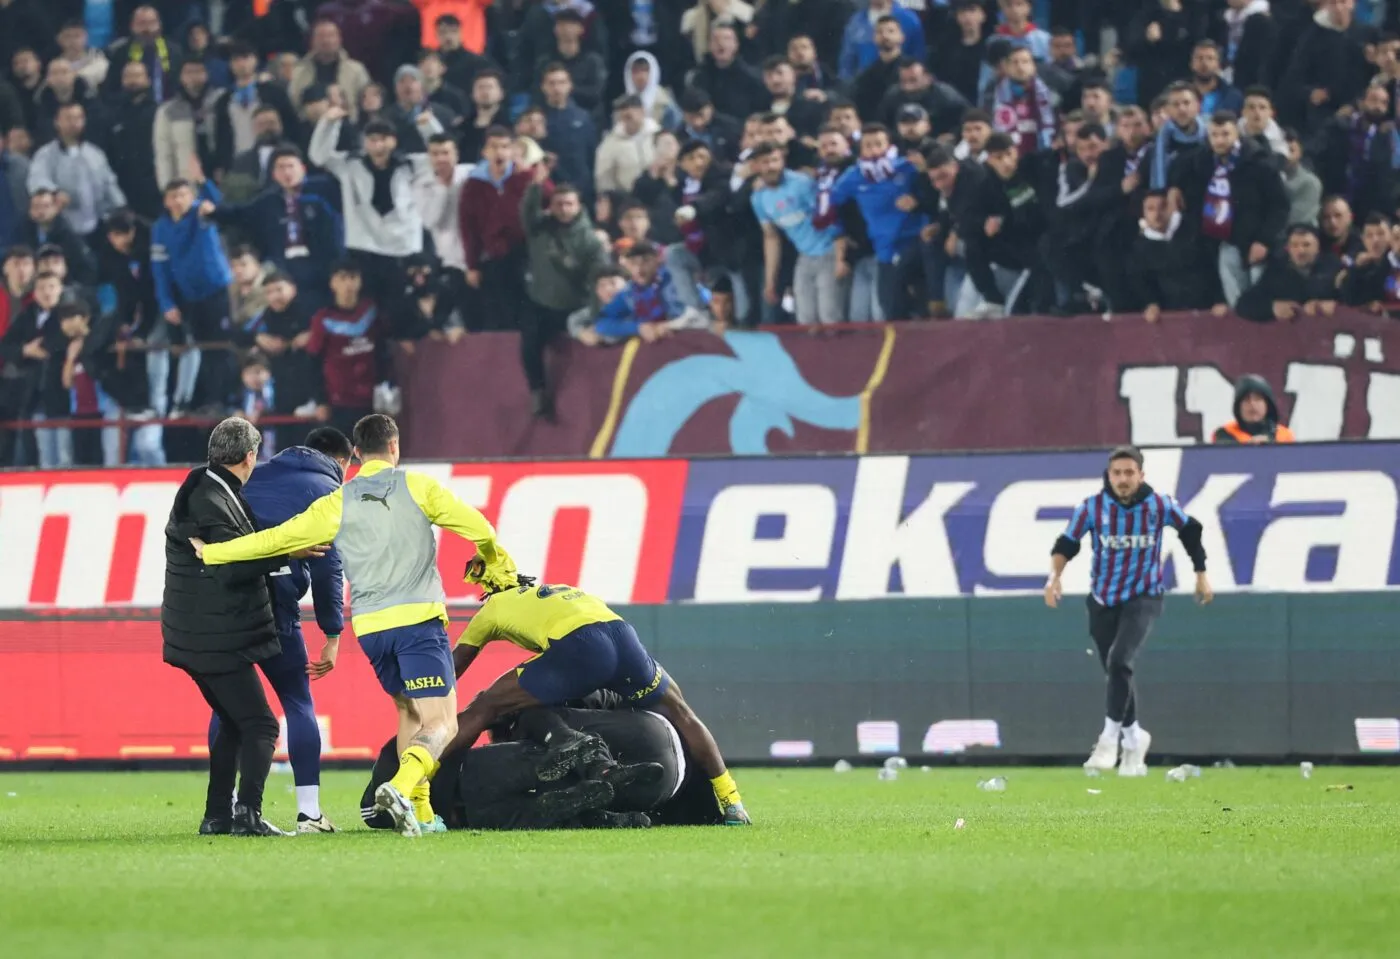 La sanction est tombée pour Trabzonspor, et elle passe plutôt mal